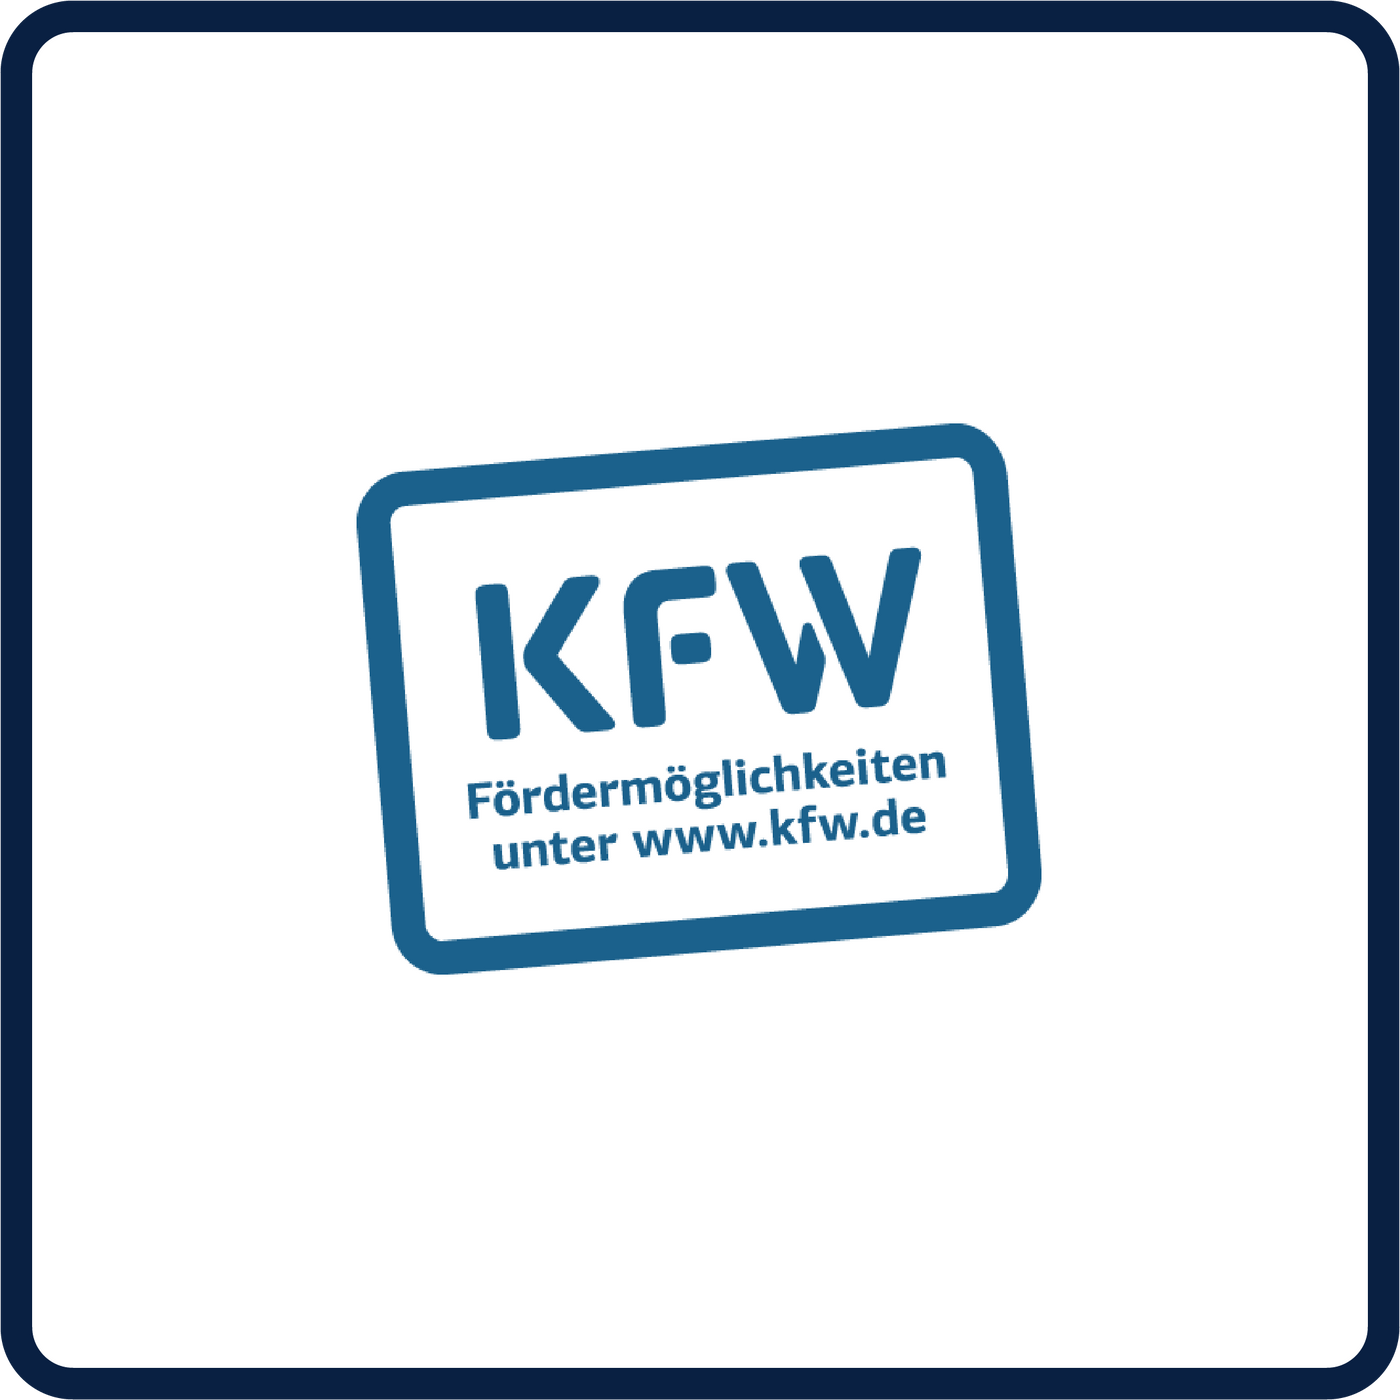 in der Mitte des Bildes steht in blauen Buchstaben "KFW Fördermöglichkeiten unter www.kfw.de". Der Schriftzug ist blau umrandet auf weißem Hintergrund.